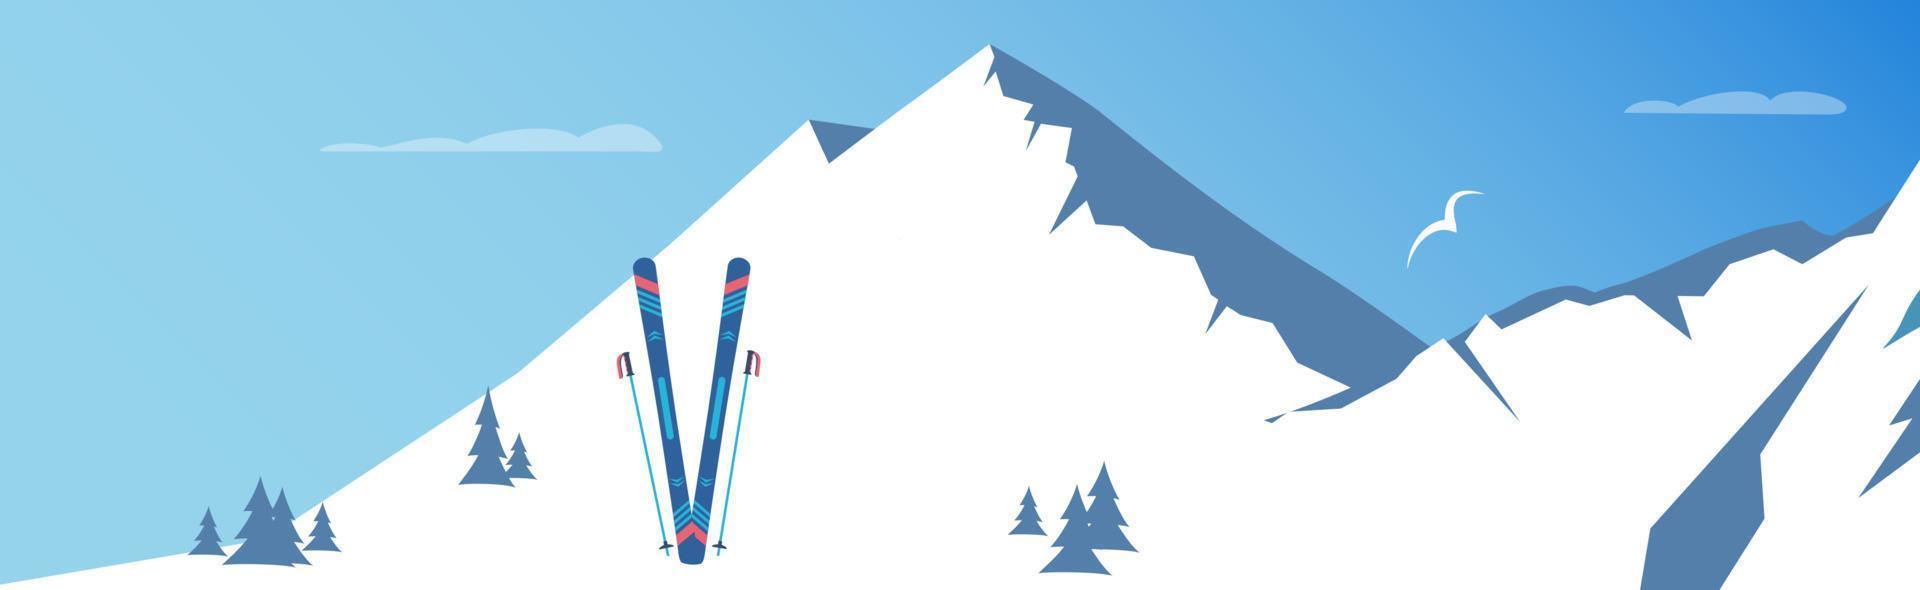 skiën en besneeuwd bergen. winter sport. vector illustratie.